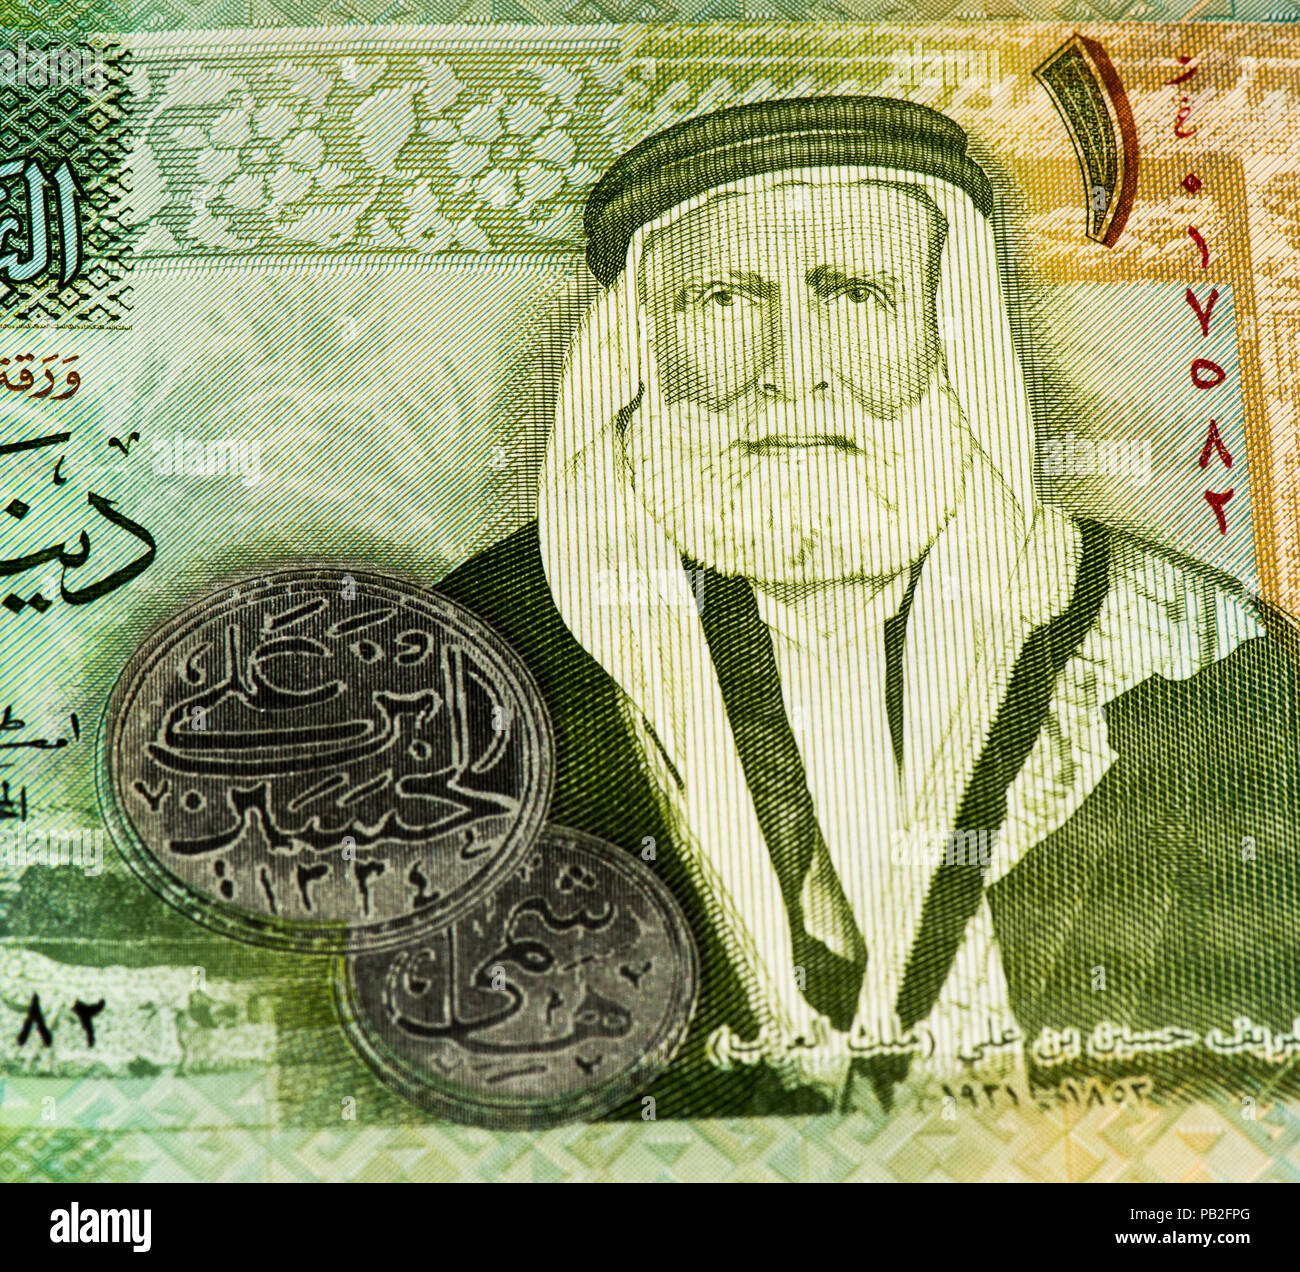 1 Jordanian dinar bank note. Jordanian dinar is the national currency of  Jordan Stock Photo - Alamy